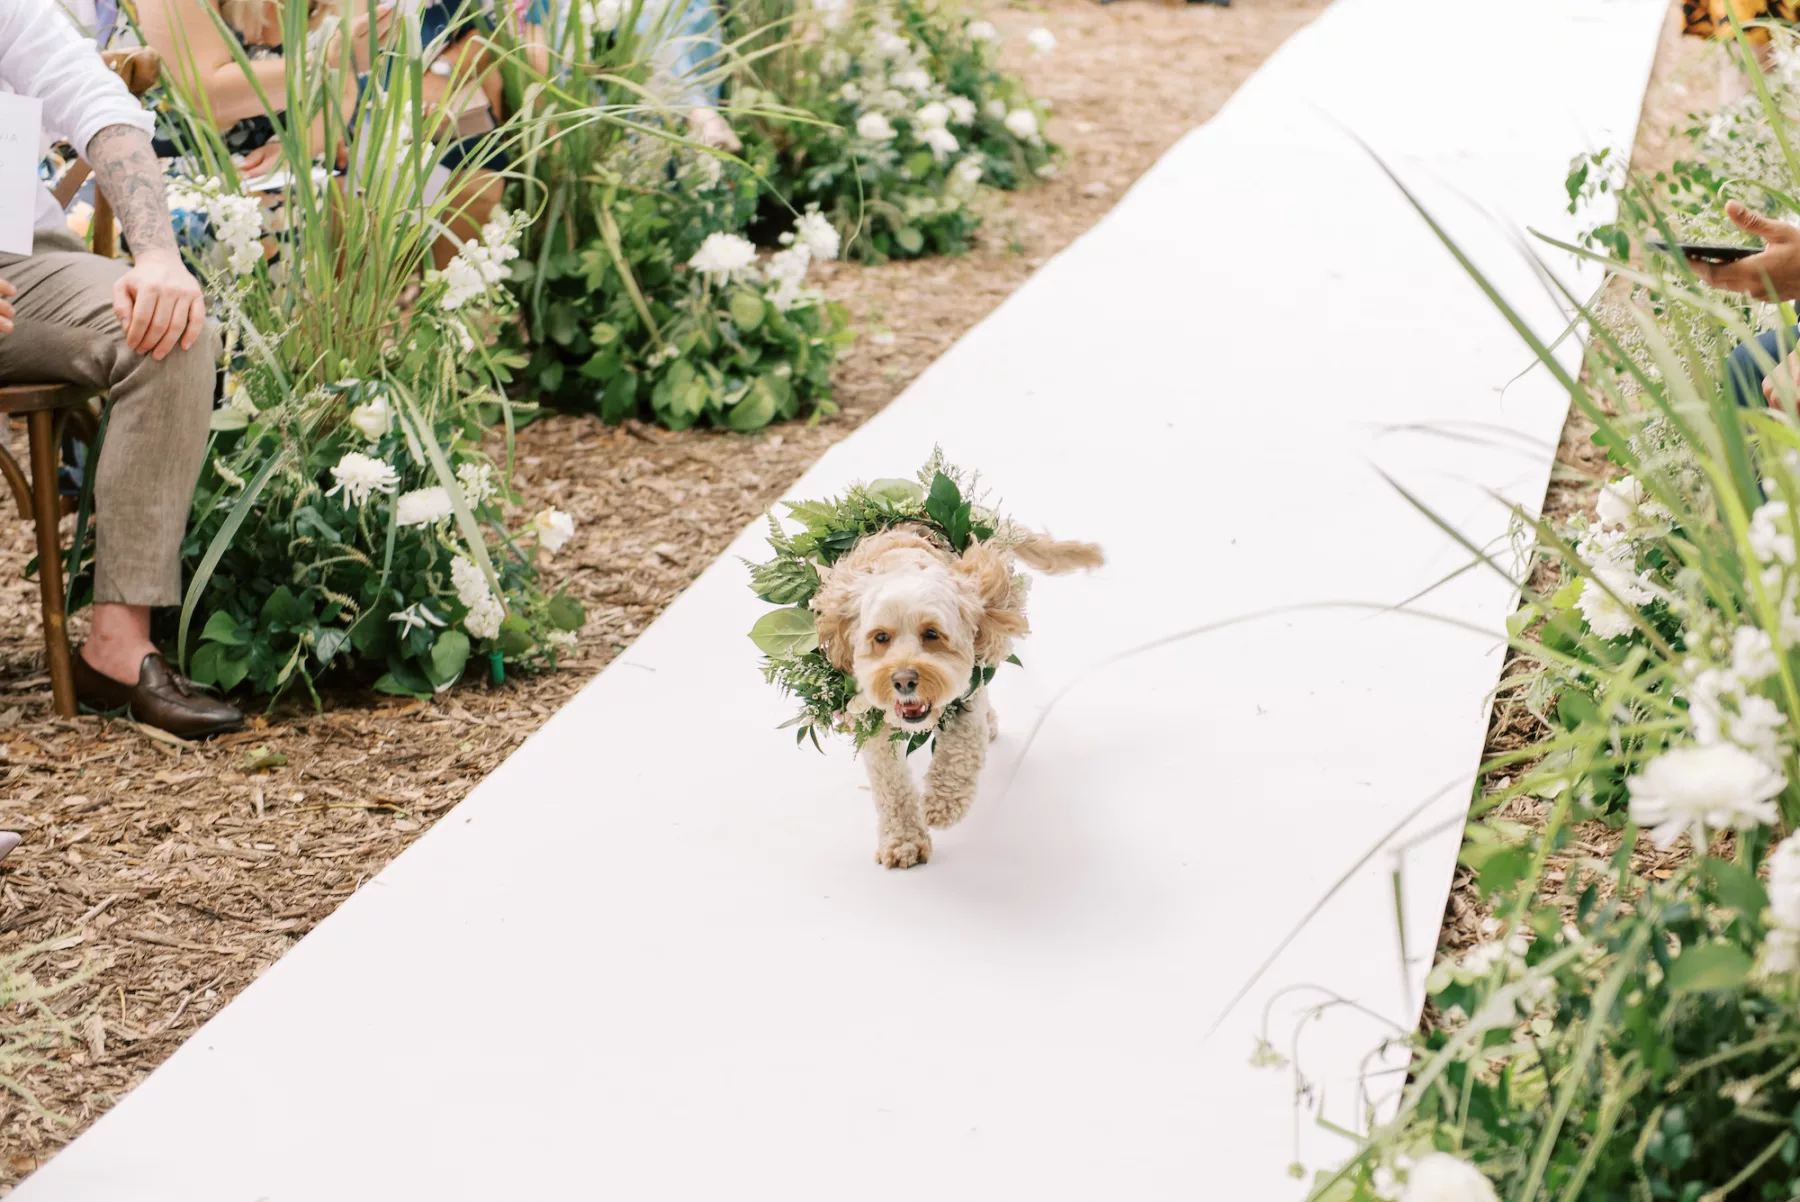 Dog as Flower Girl for Garden Wedding Ceremony Inspiration